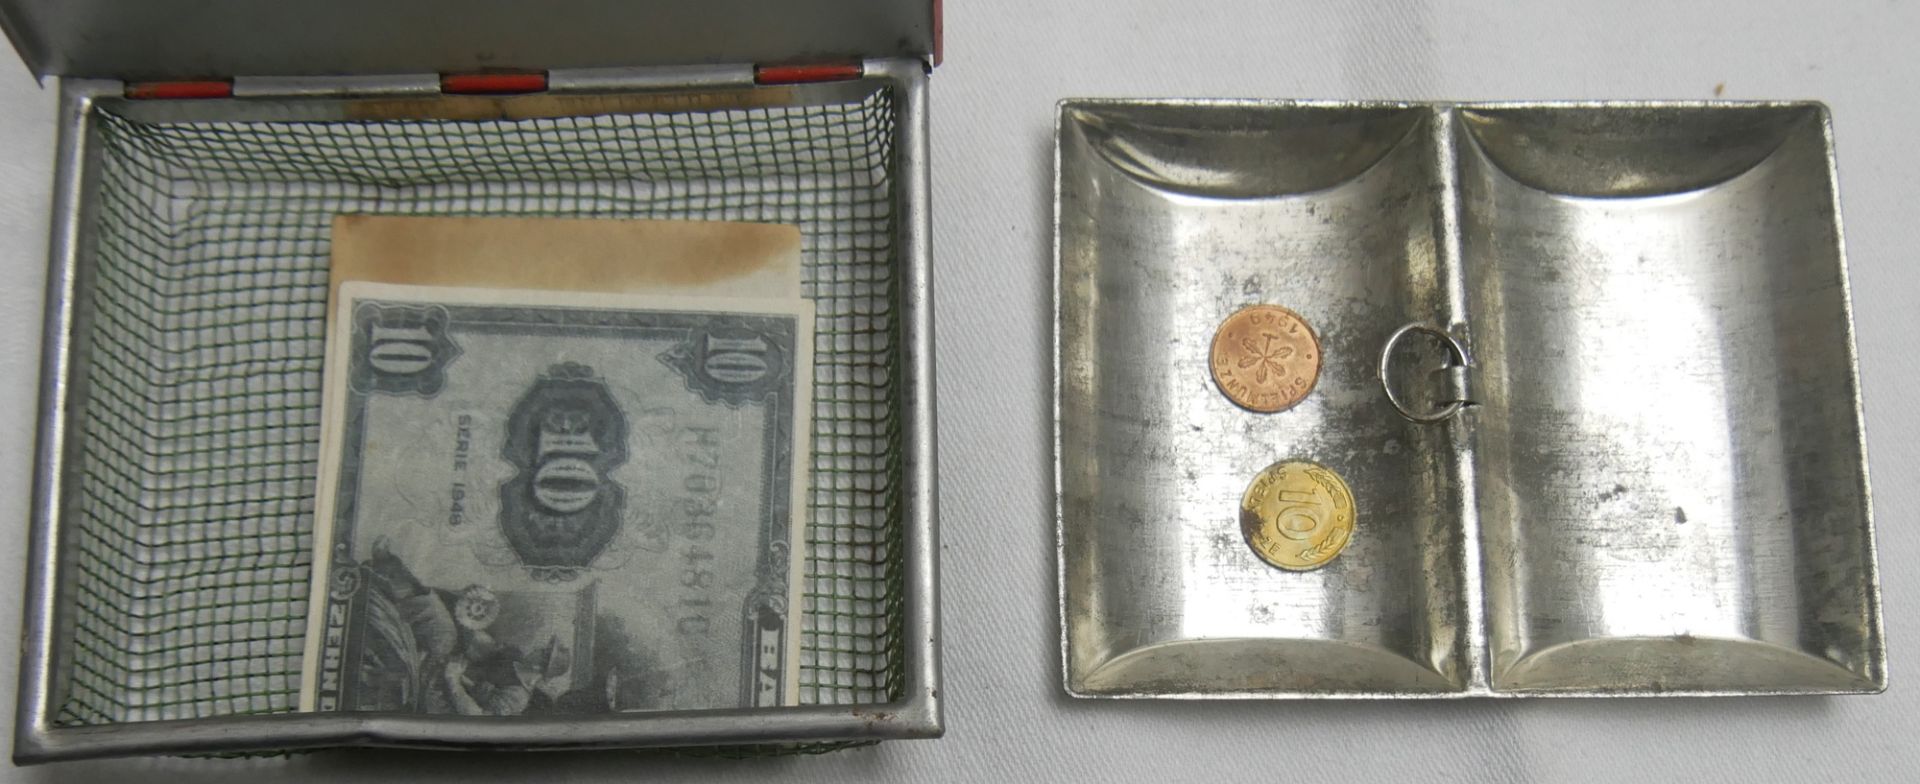 50er Jahre Blech Kassette / Geldkassette für den Kaufladen, dabei auch 1 Banknote 10 Kindergeld - Image 2 of 2